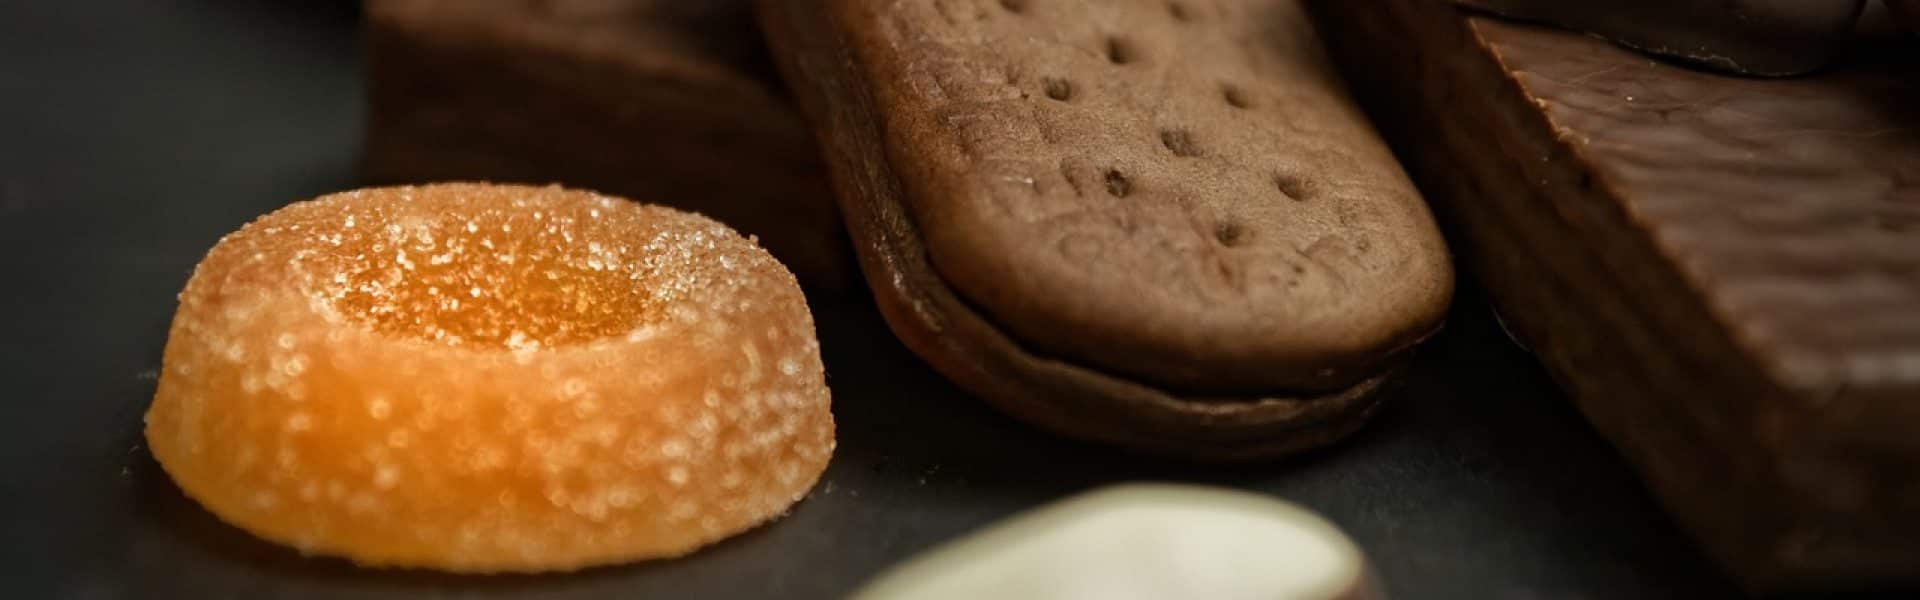 Les biscuits bretons, quel est le secret de leur succès ?